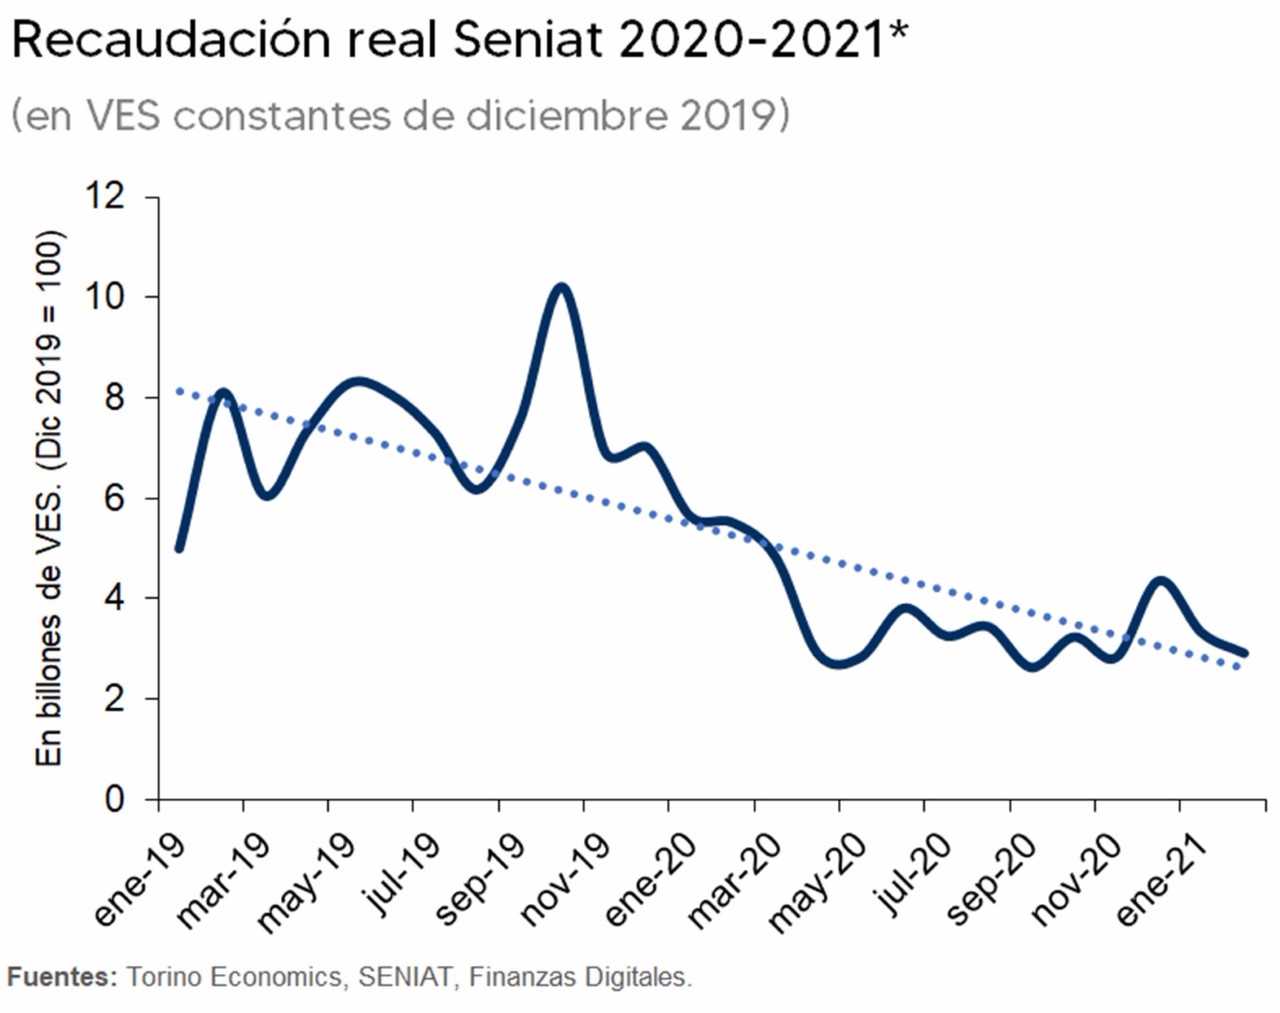 Torino Economics: La desaceleración en la economía venezolana sería de -3,1% para 2021